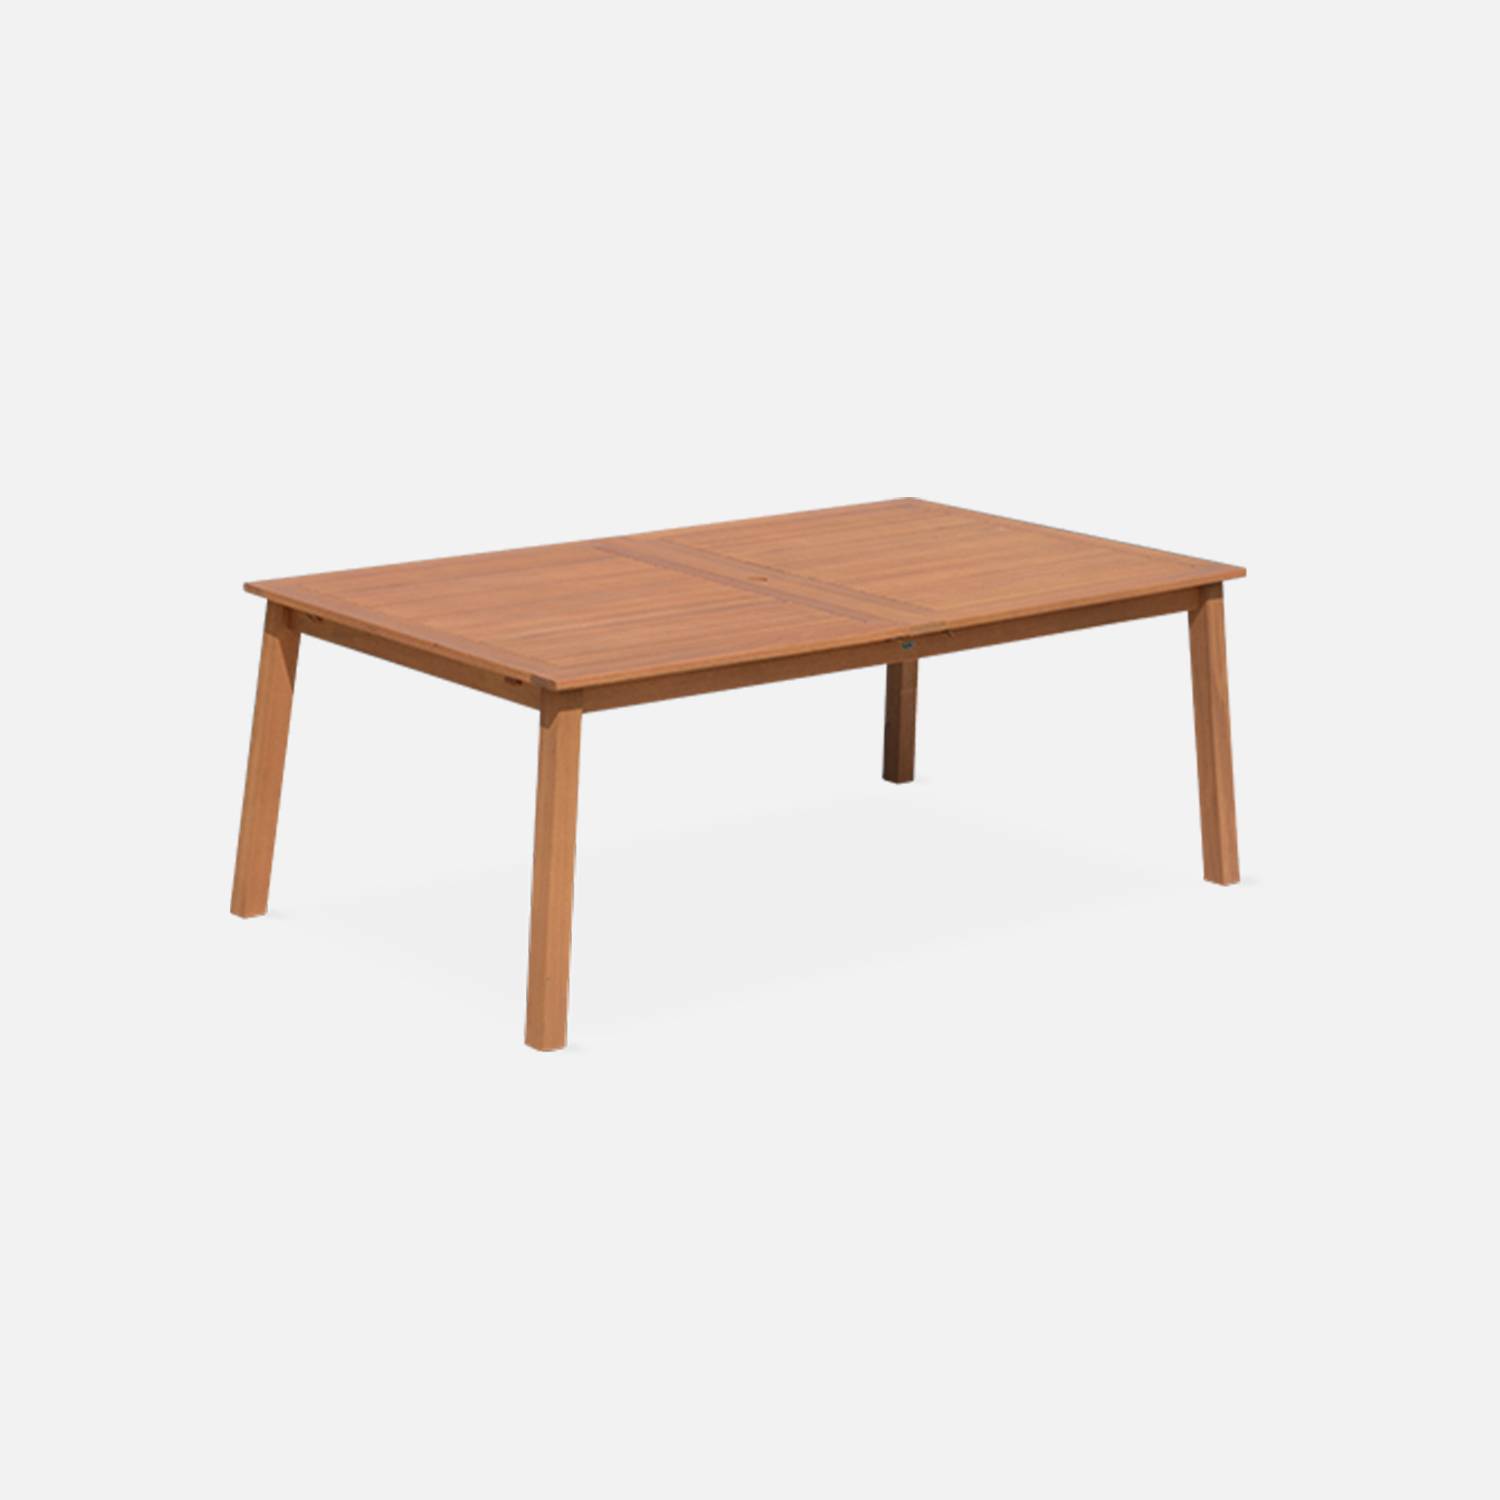 Tavolo da giardino in legno, dimensioni: 200-250-300cm - modello: Almeria - Grande tavolo rettangolare con prolunga, in eucalipto FSC Photo2